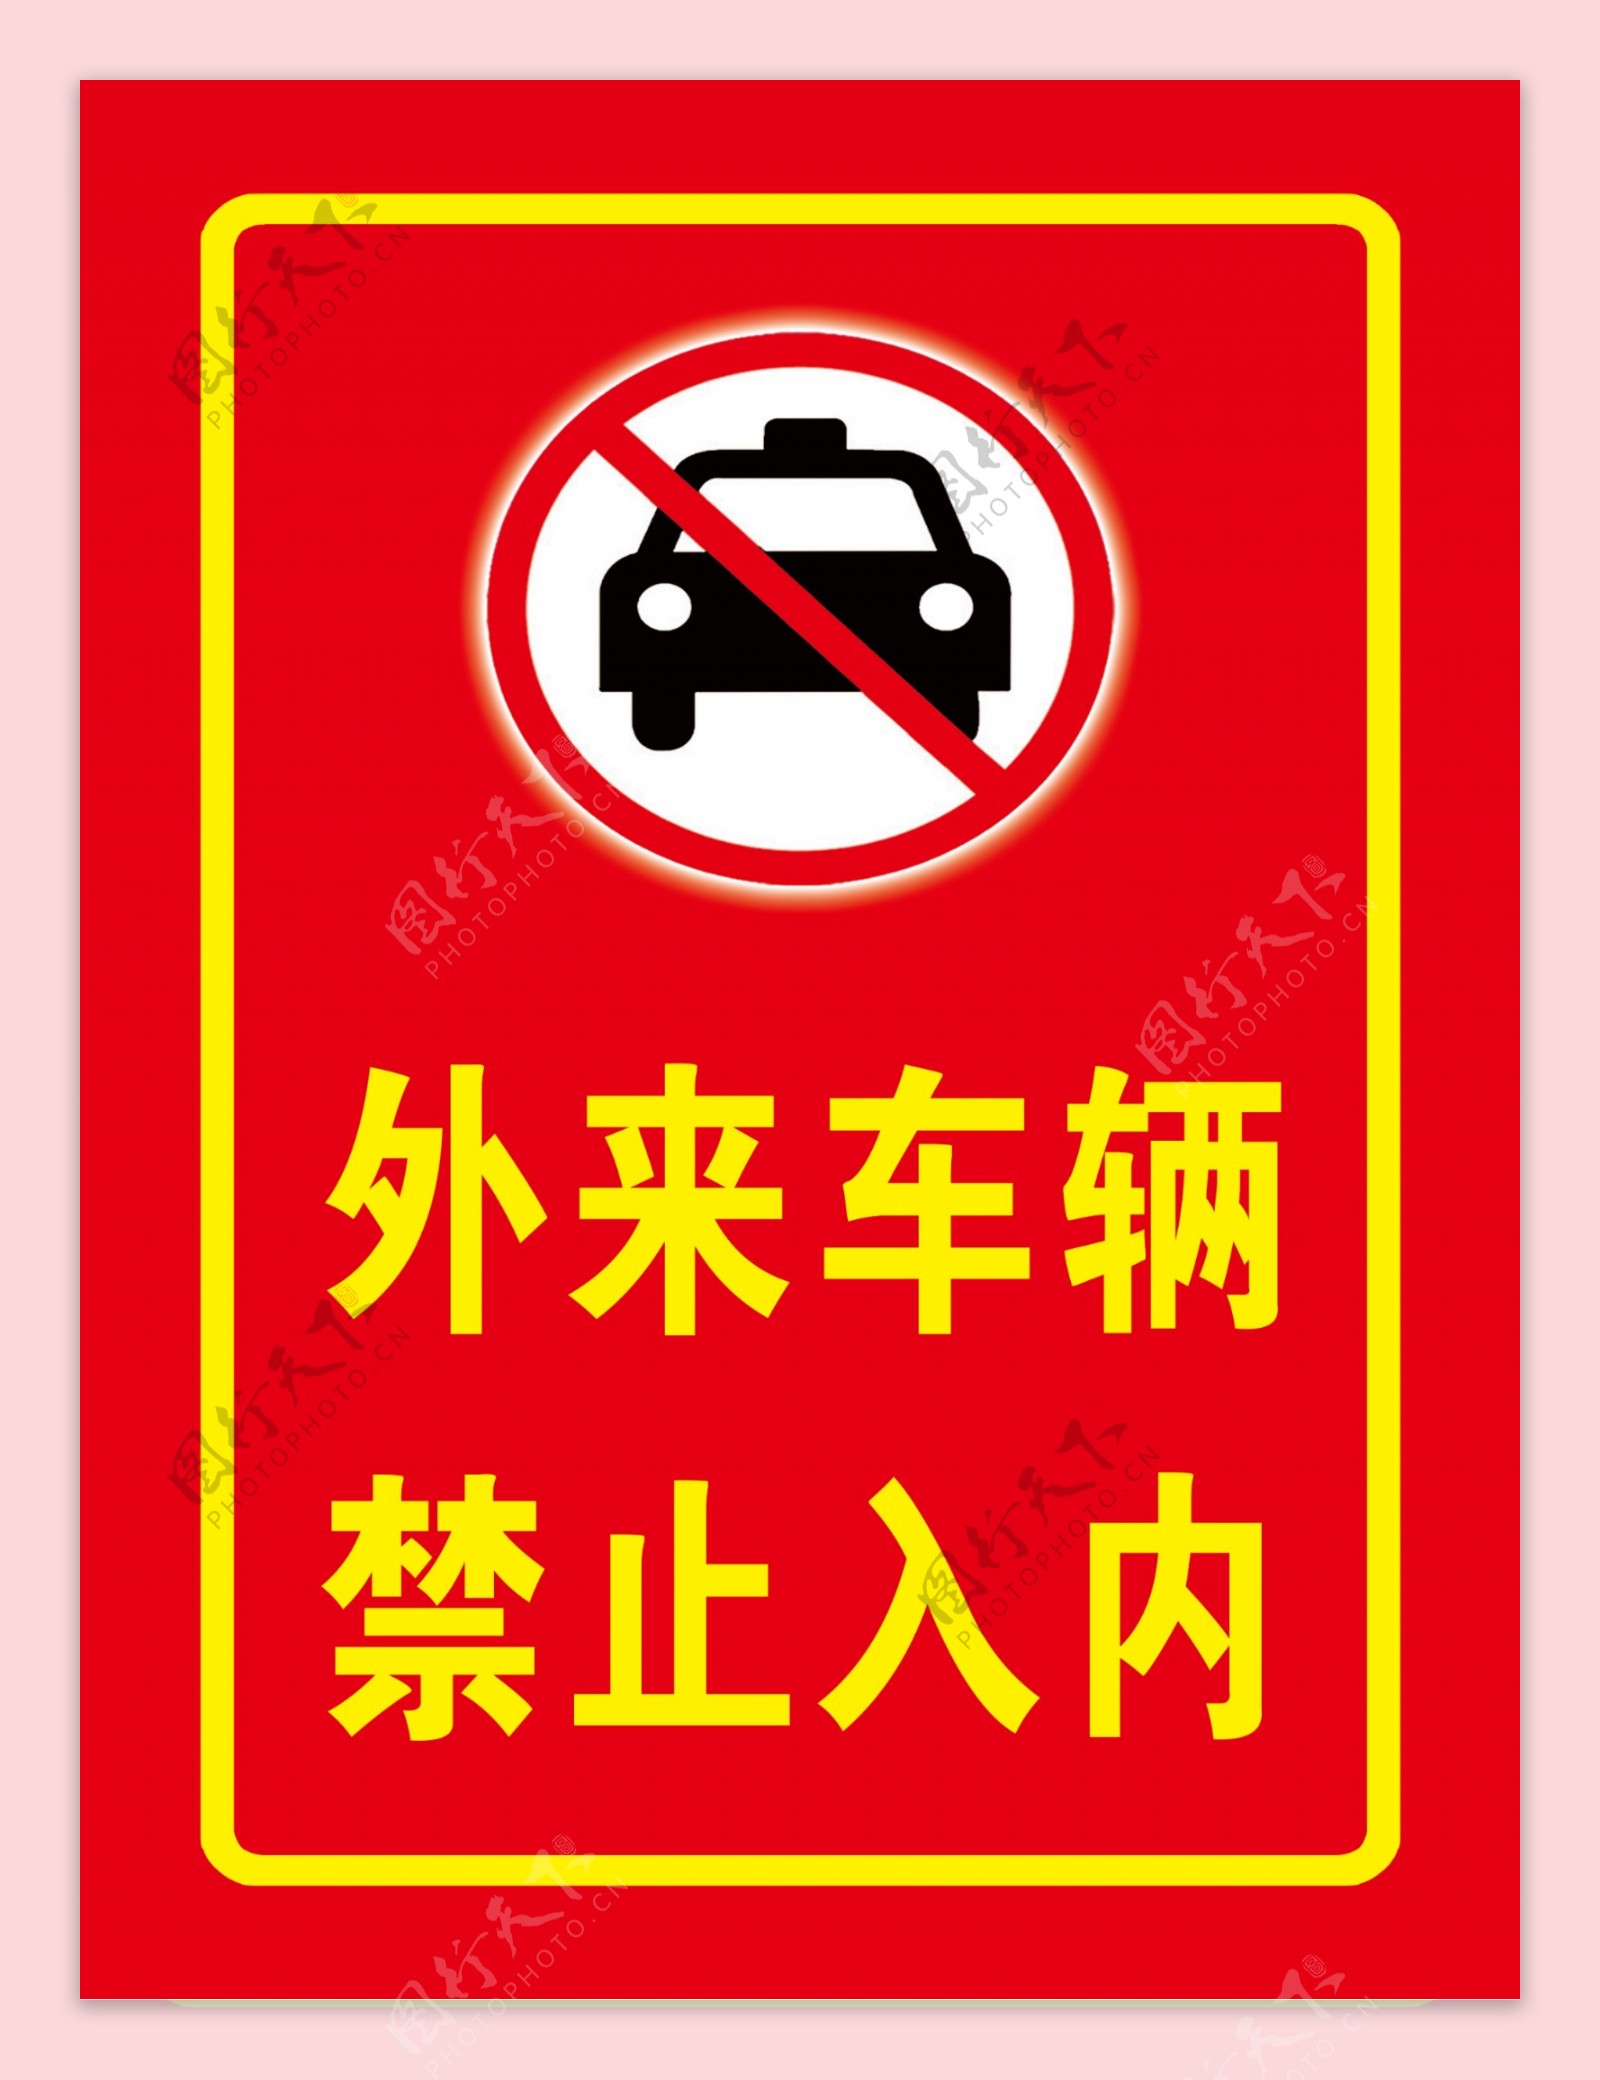 外车辆禁止入内标识指示